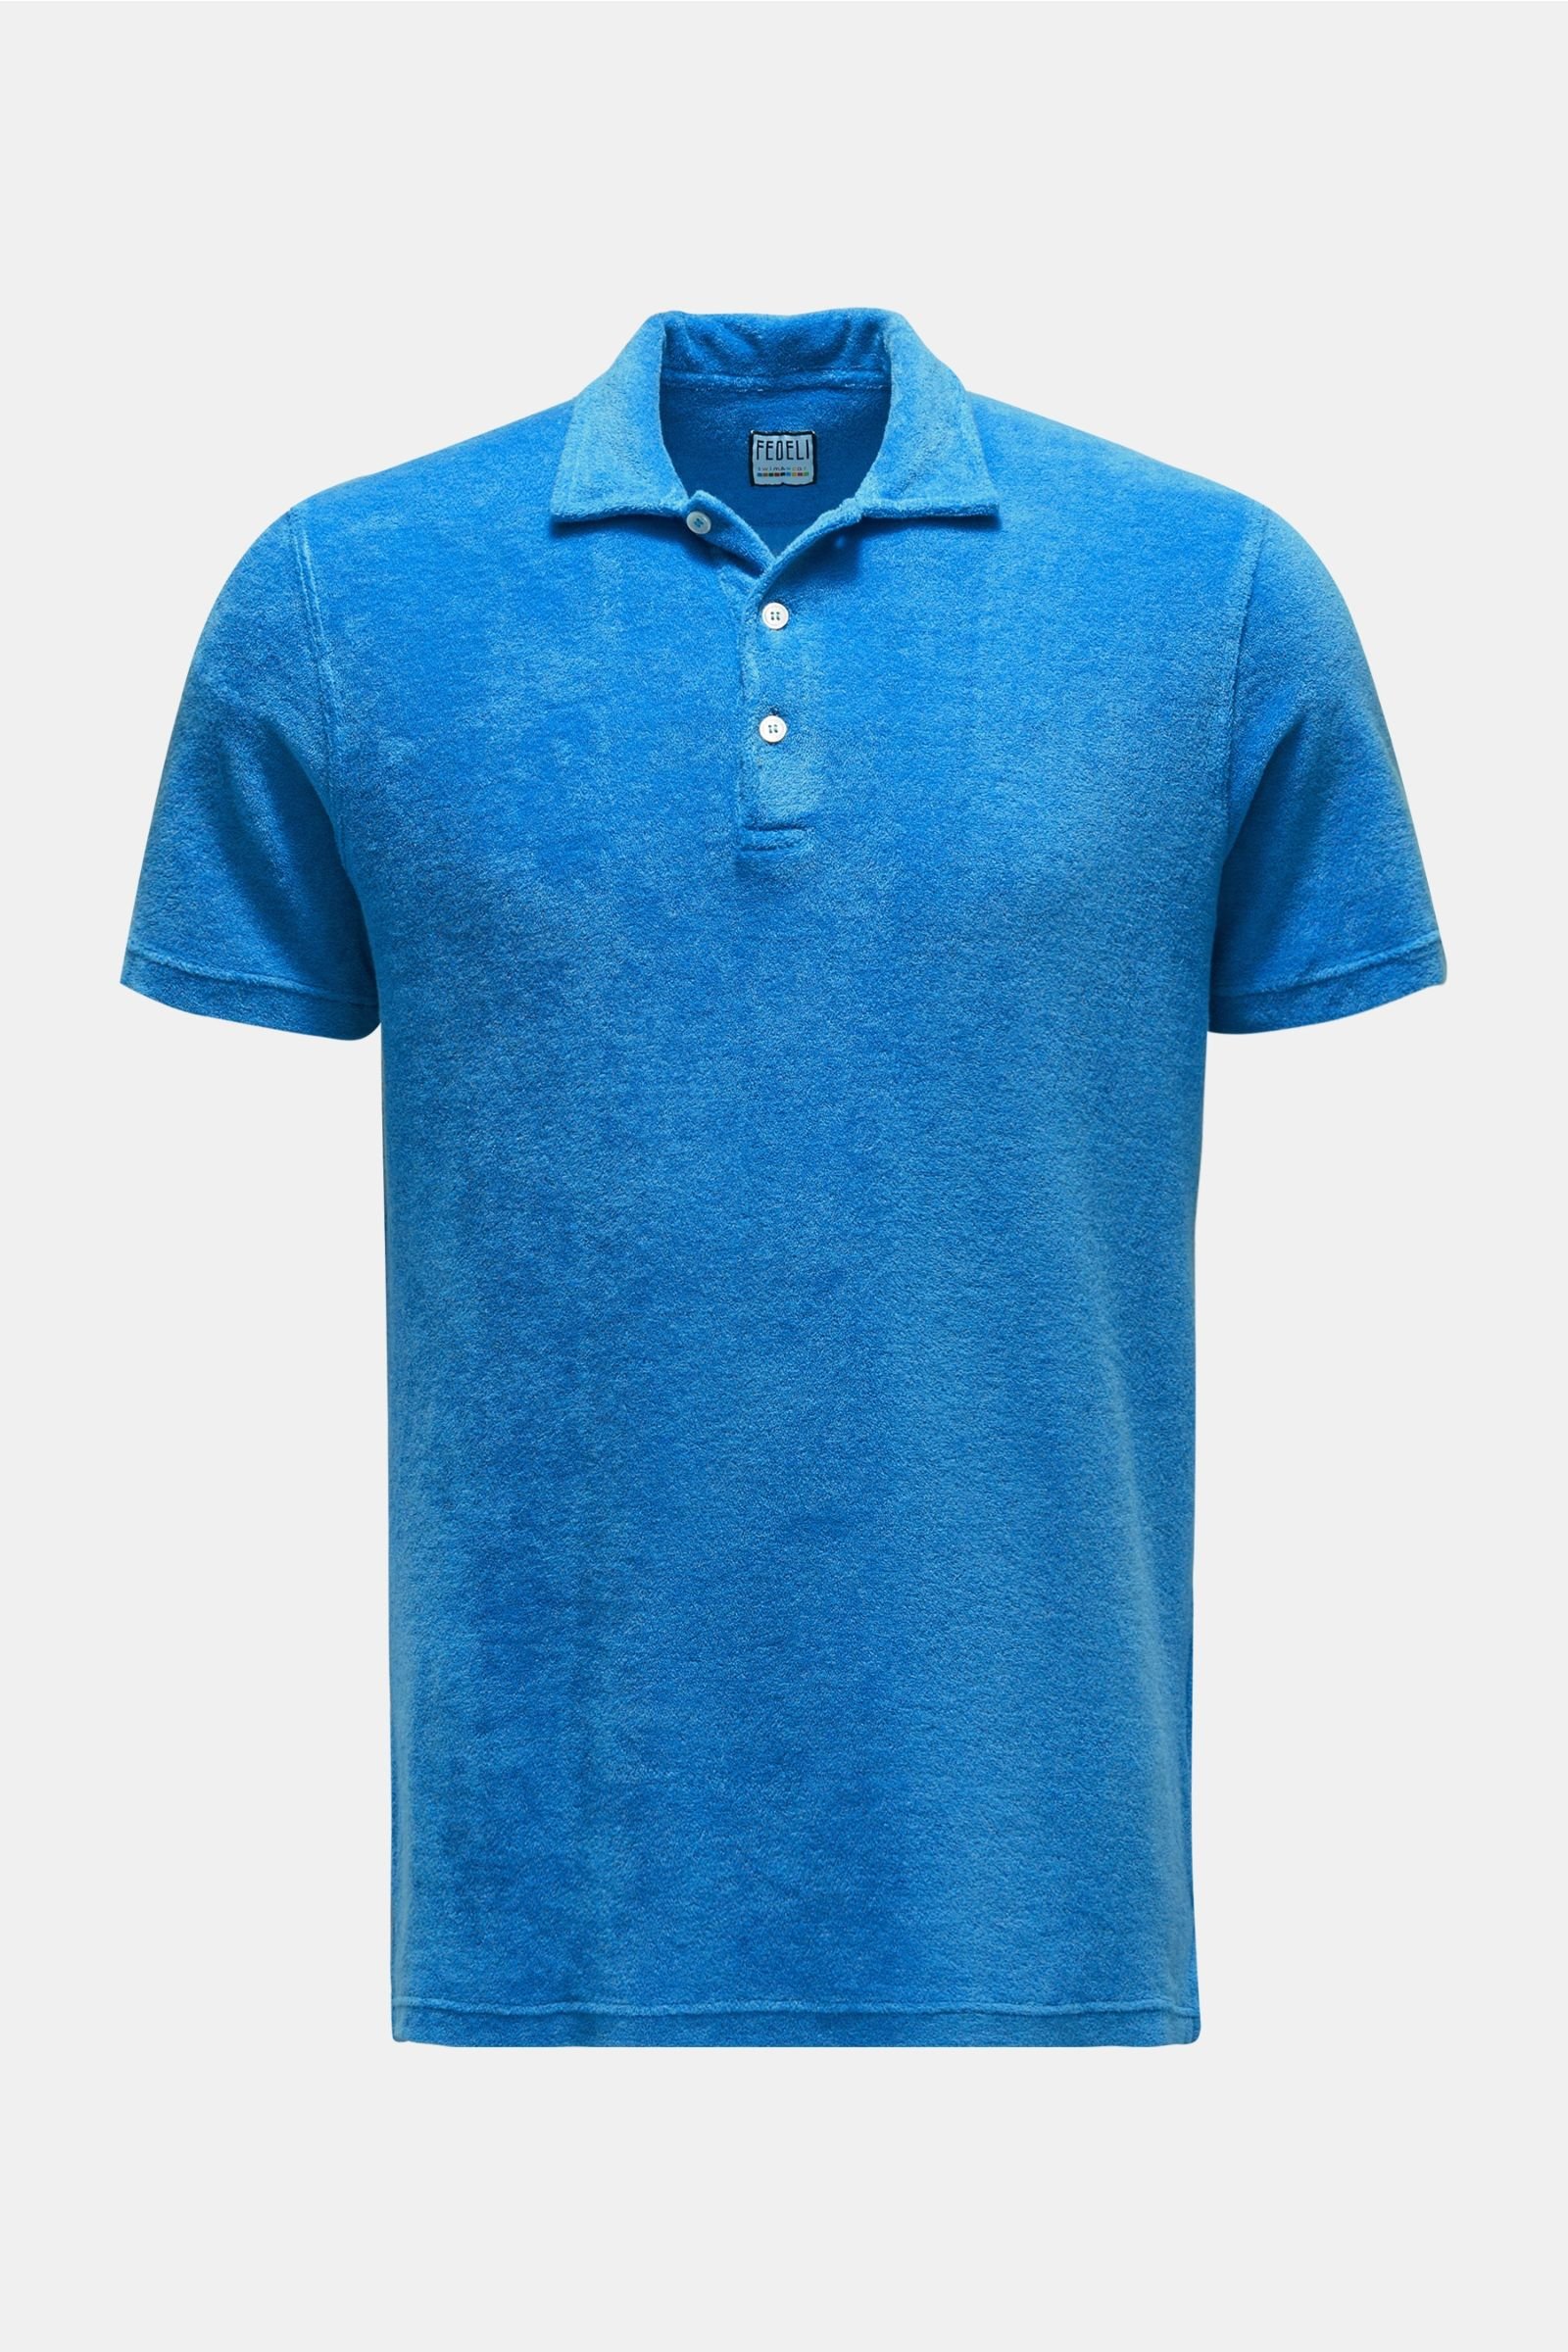 Terry polo shirt 'Terry Mondial' blue